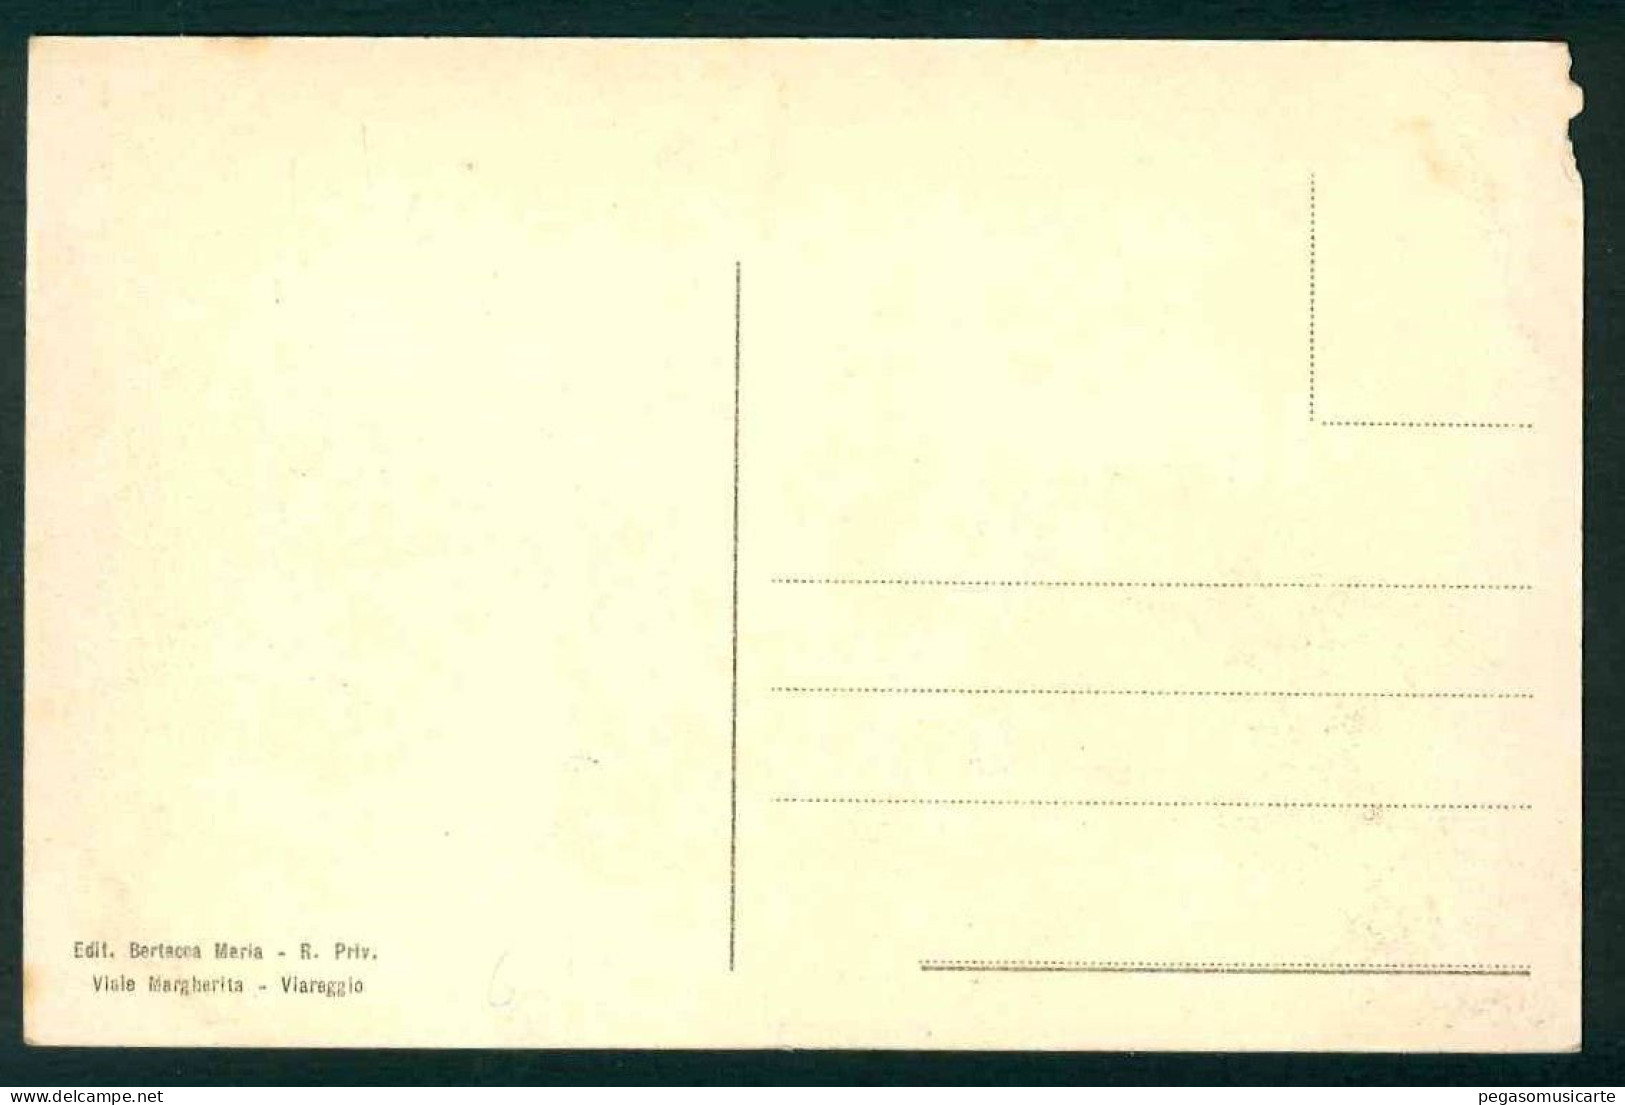 BB376 - VIAREGGIO VIA ROSOLINO PILO ANIMATA - FRASE D'ANNUNZIO - 1910 CIRCA - ANGOLINO IN ALTO A SINISTRA LESIONATO - Viareggio